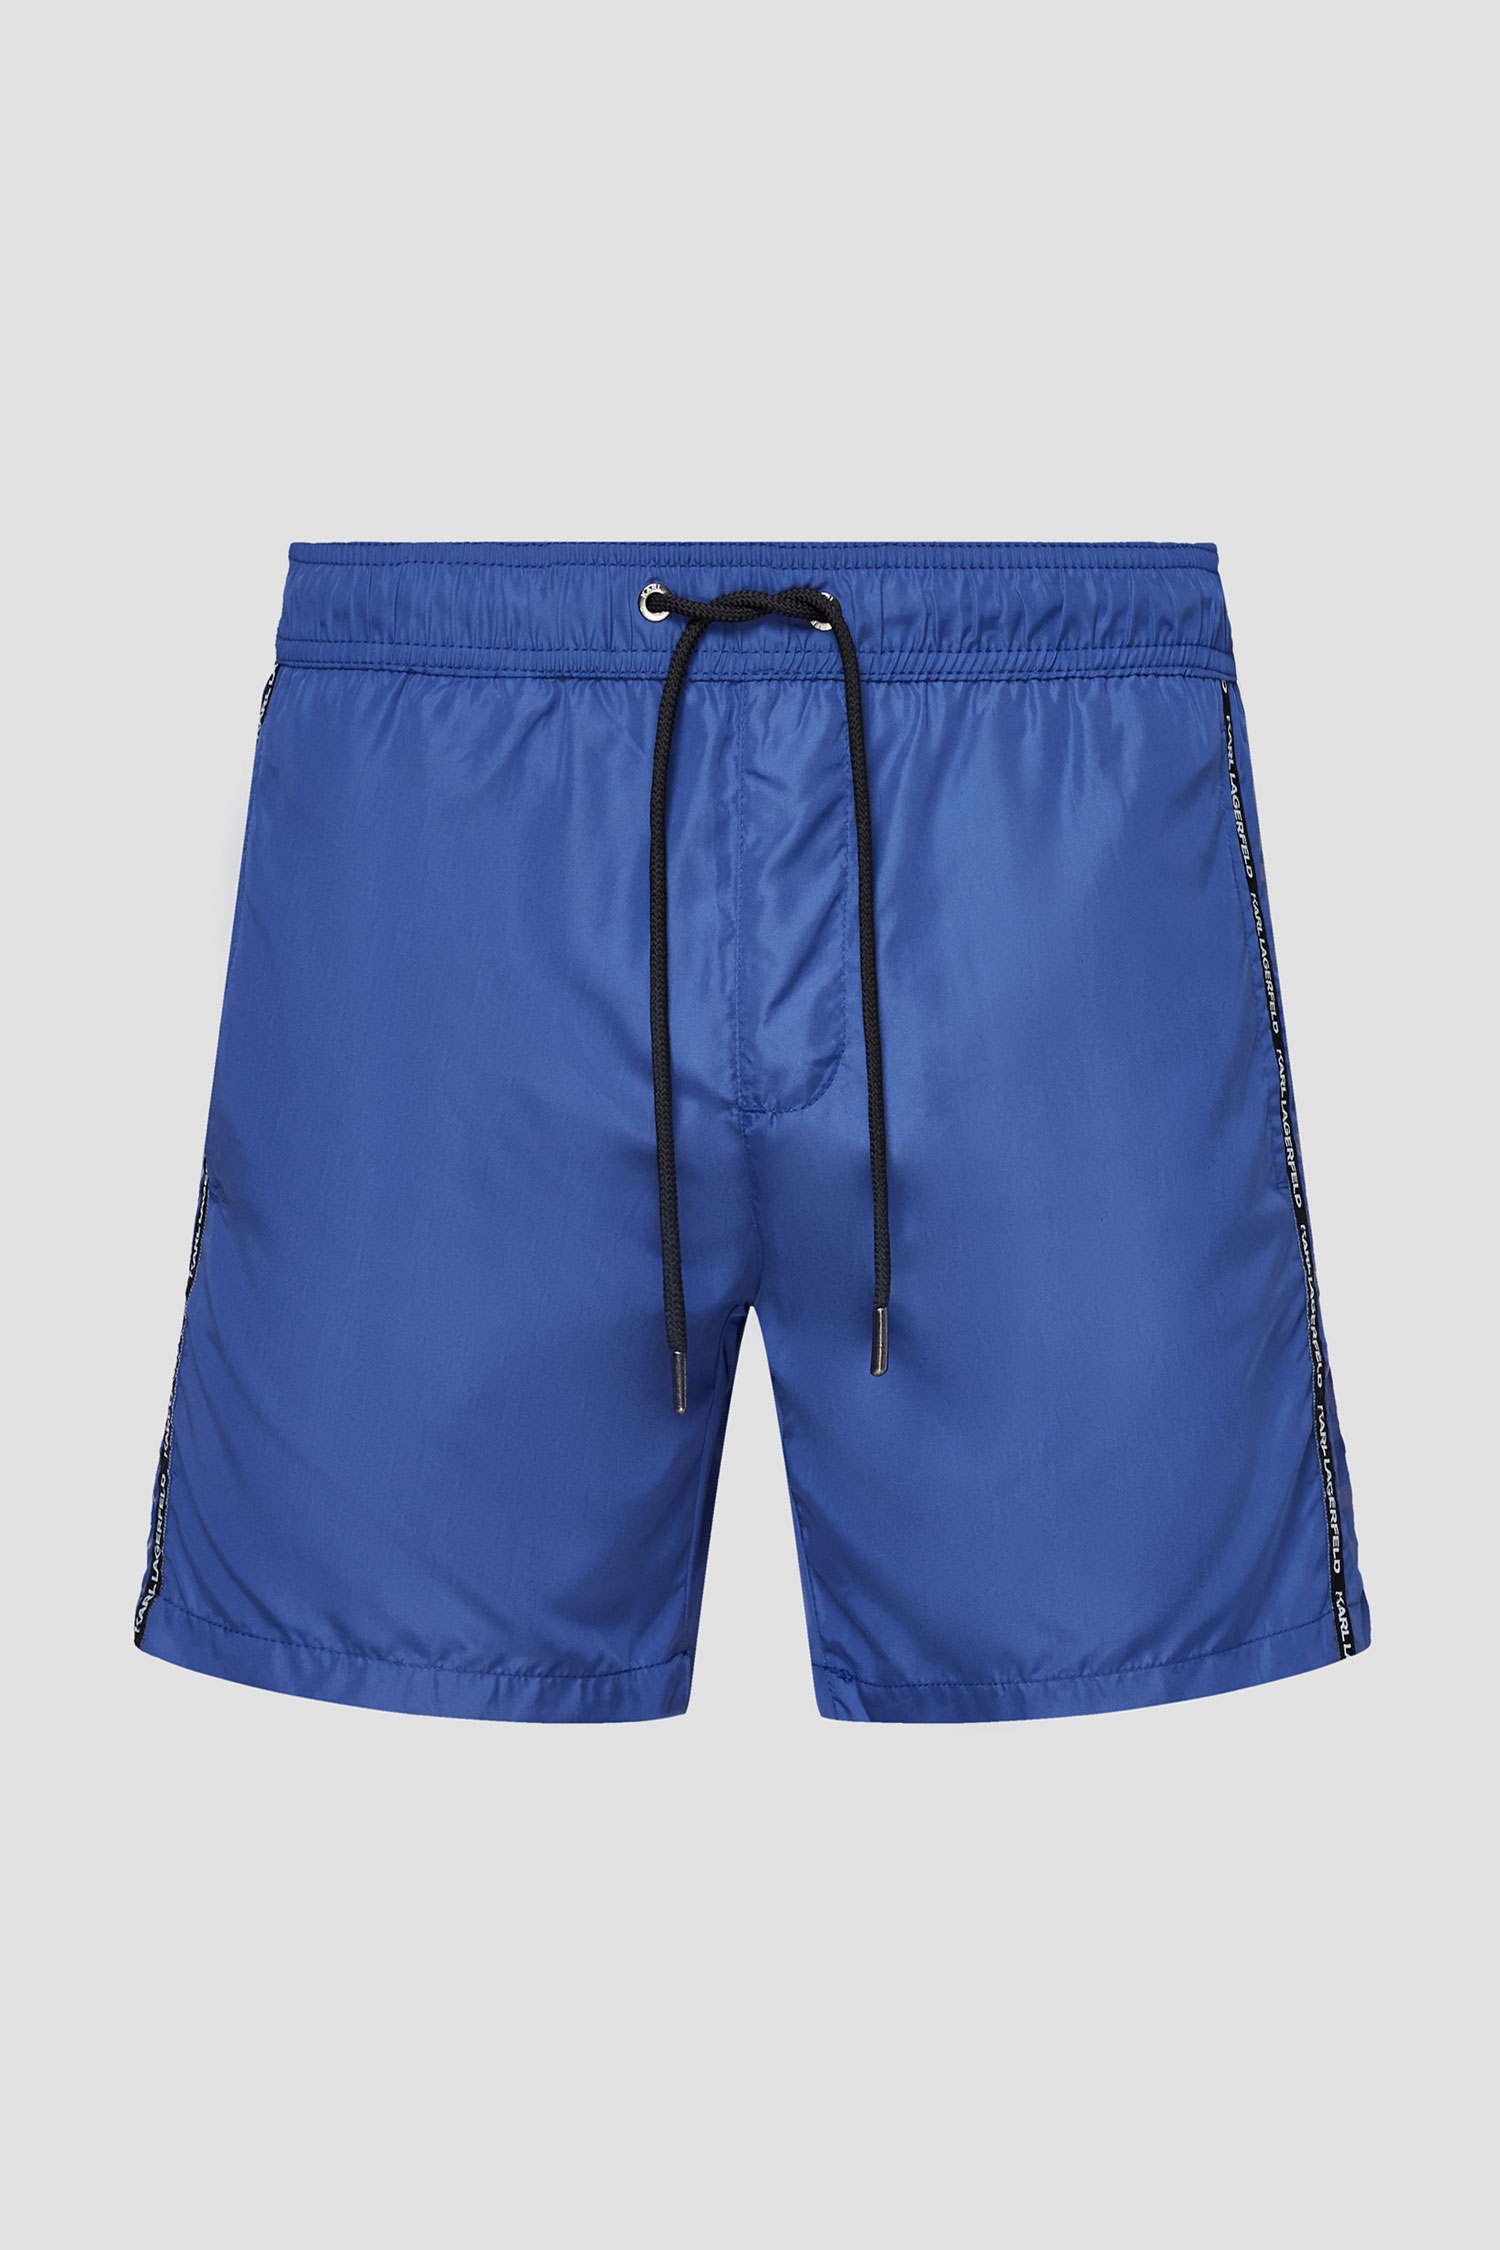 Синие плавательные шорты для парней Karl Lagerfeld KL21MBM03;NAVY